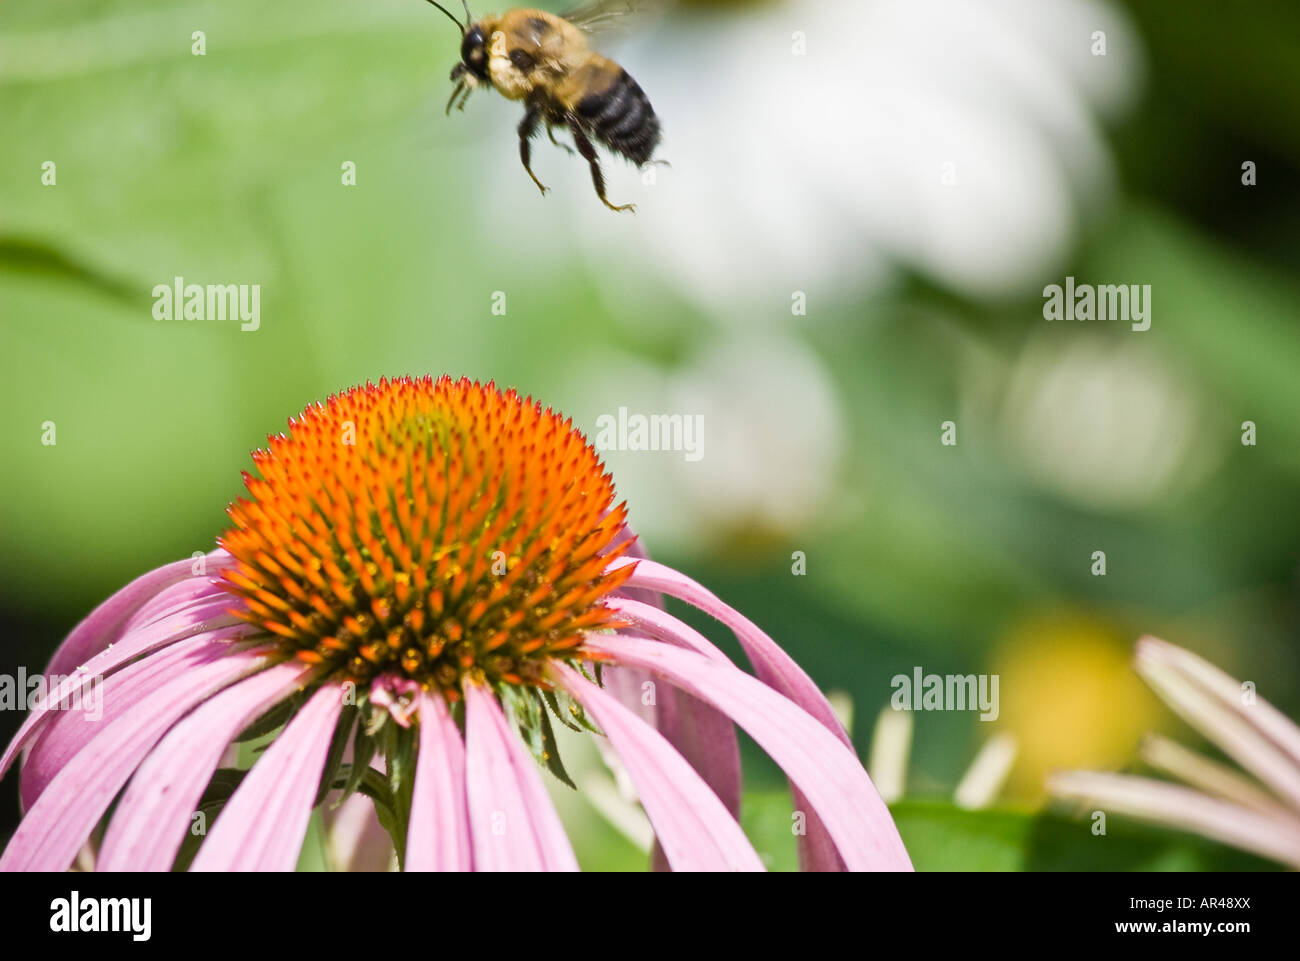 Bee in flight over Echinacea flower Stock Photo